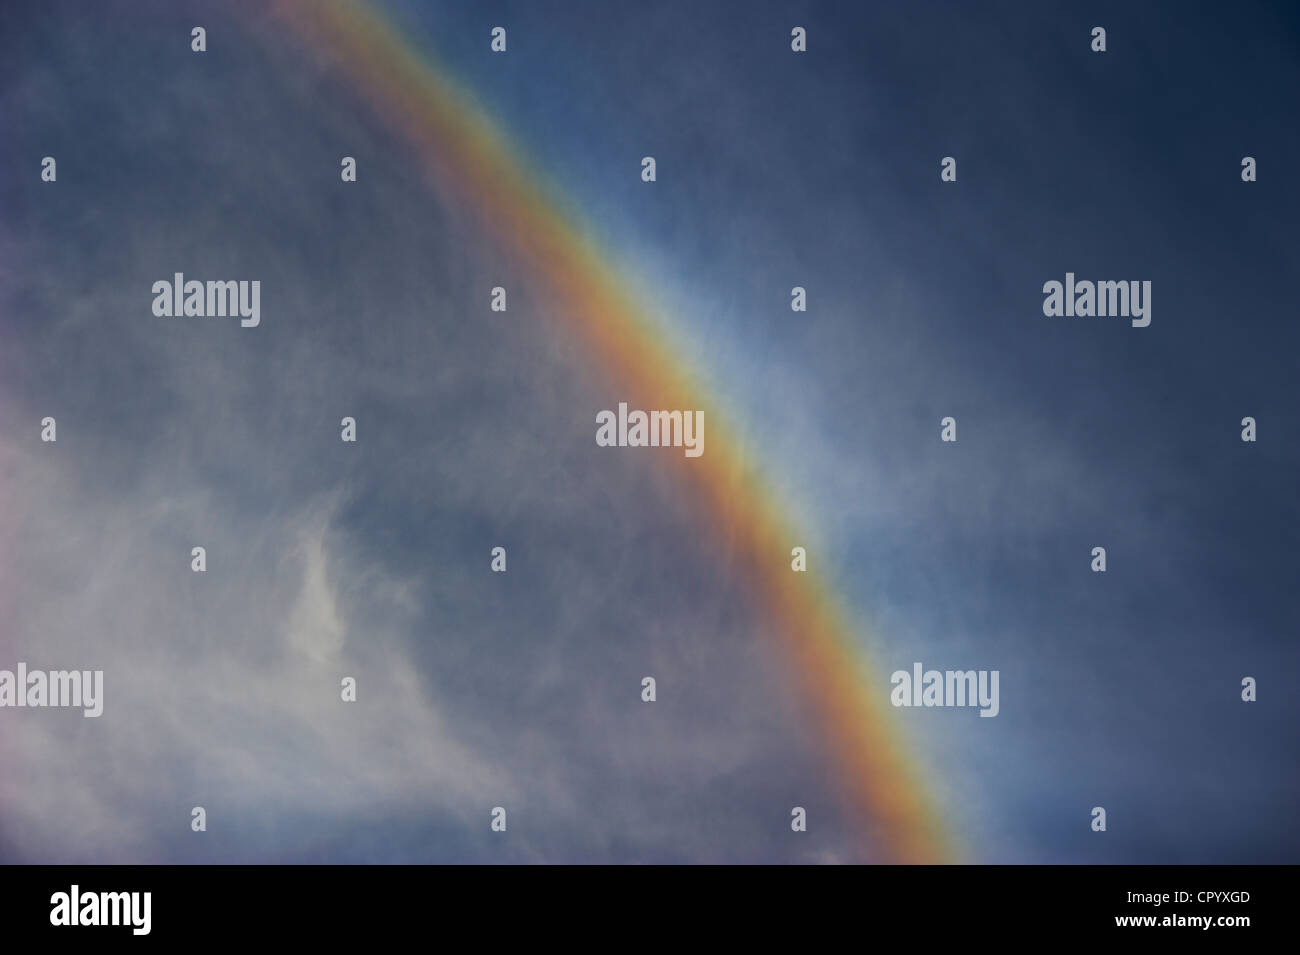 Rainbow against cloudy sky Stock Photo